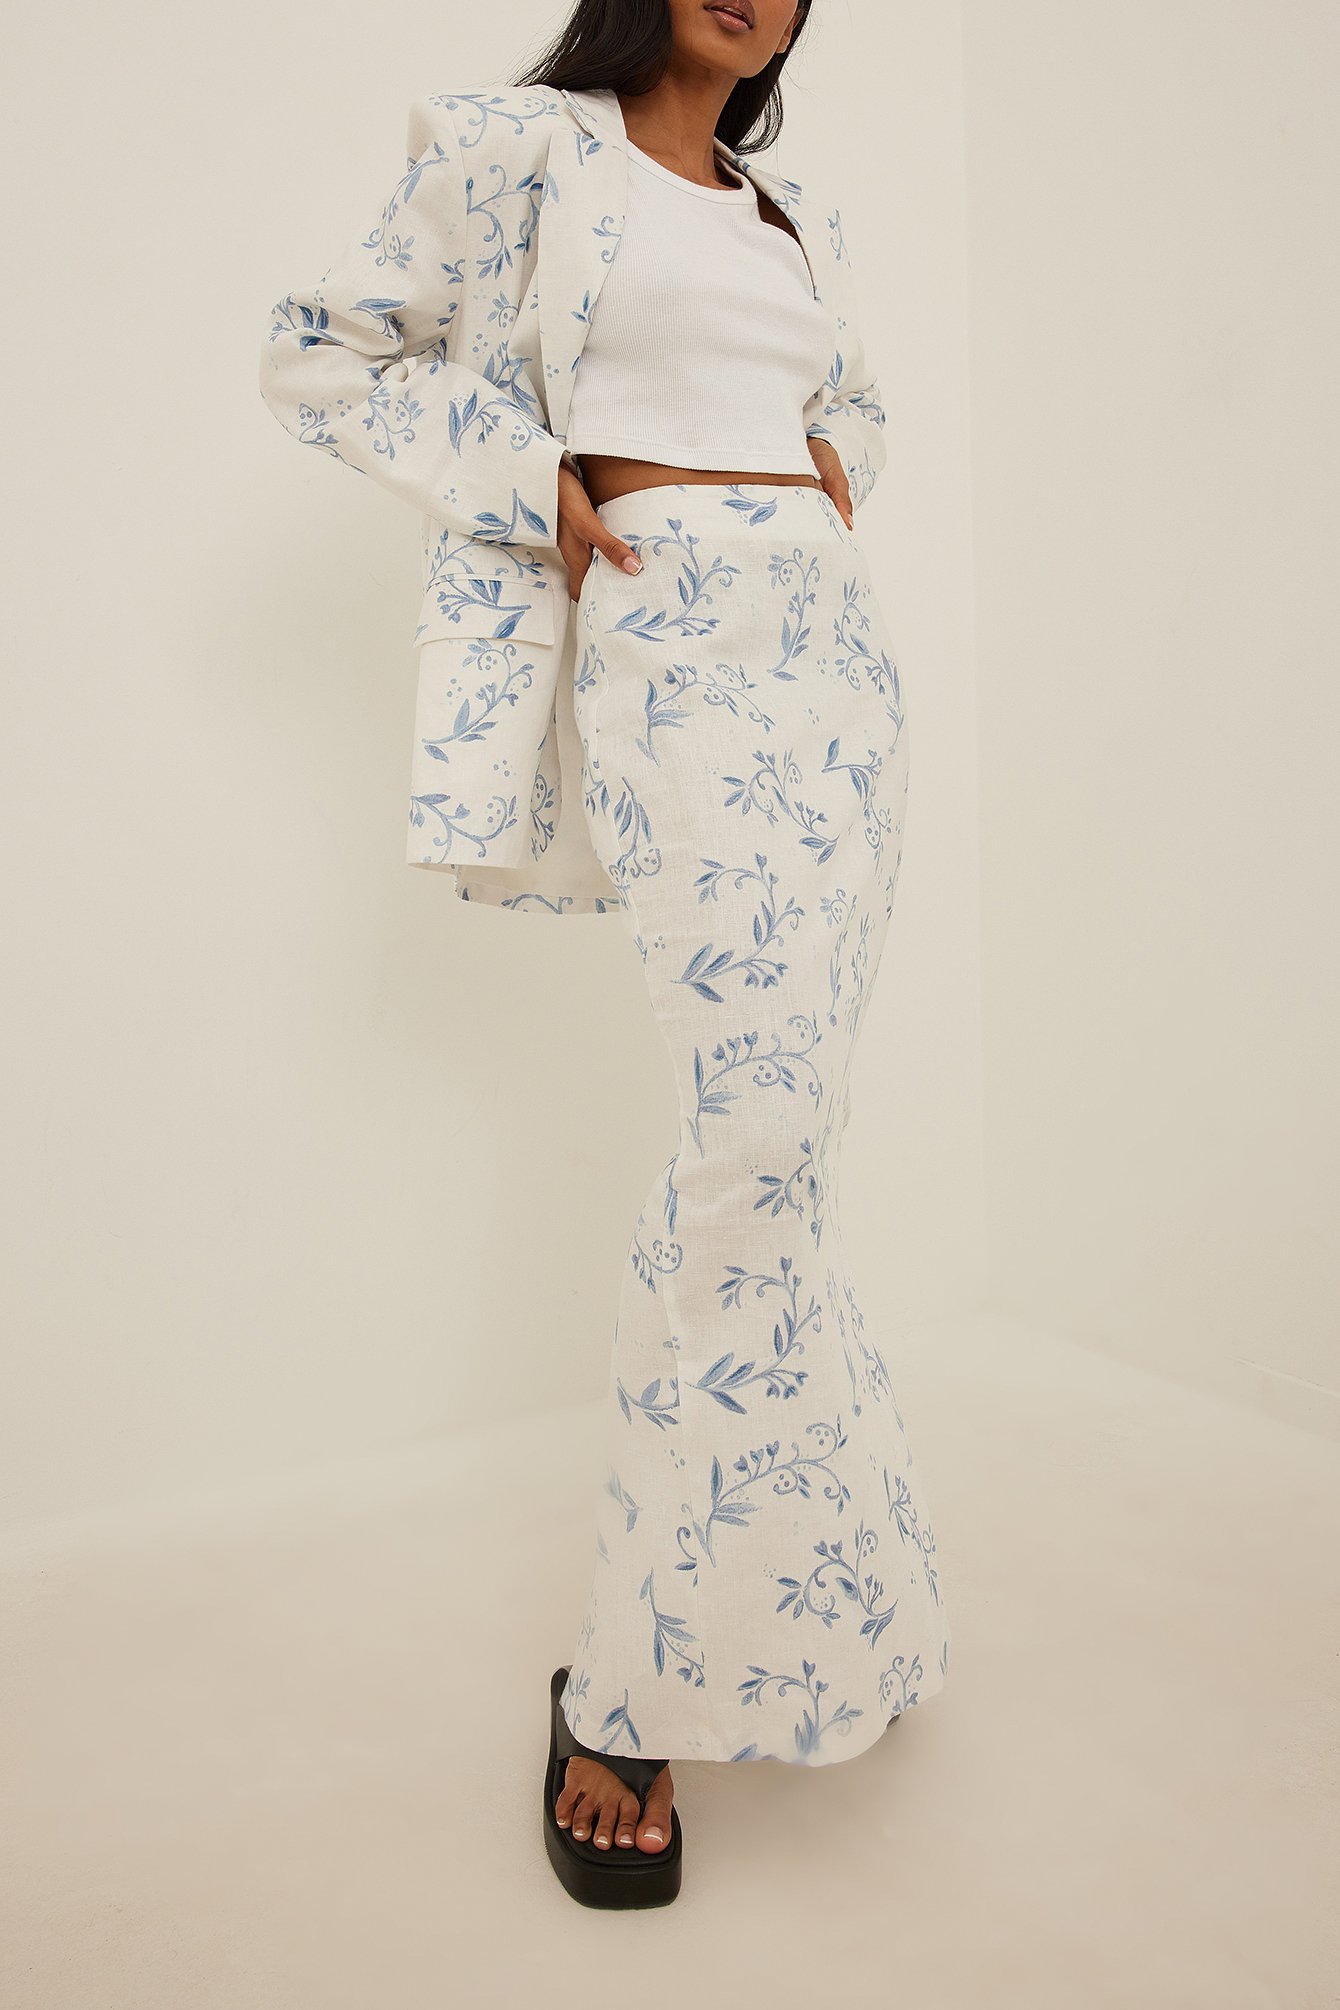 Blue/Paisly Print Linen Maxi Skirt